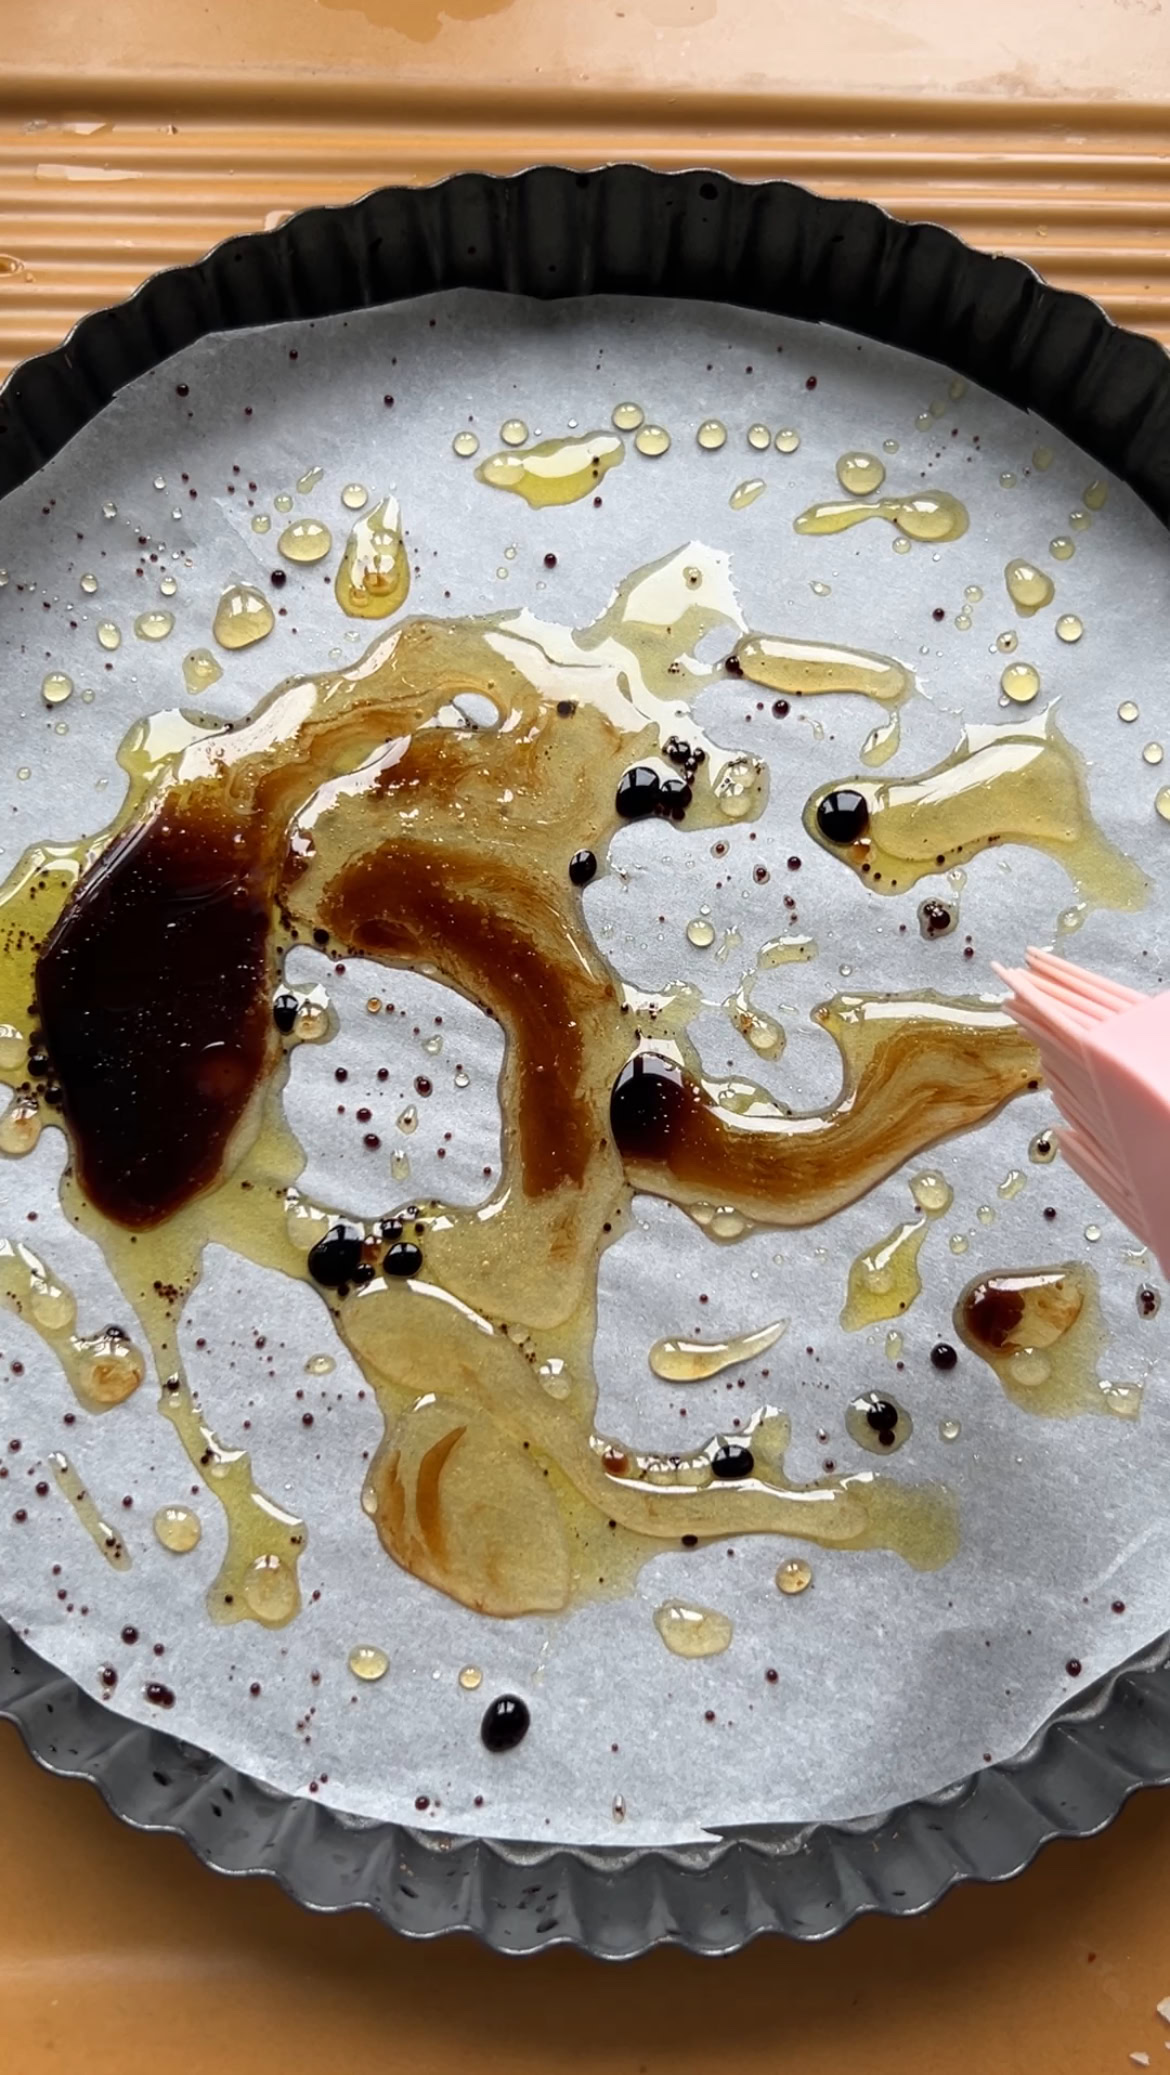 Huile d'olive, miel et vinaigre Balsamique dans le fond d'un moule à tarte recouvert de papier cuisson.